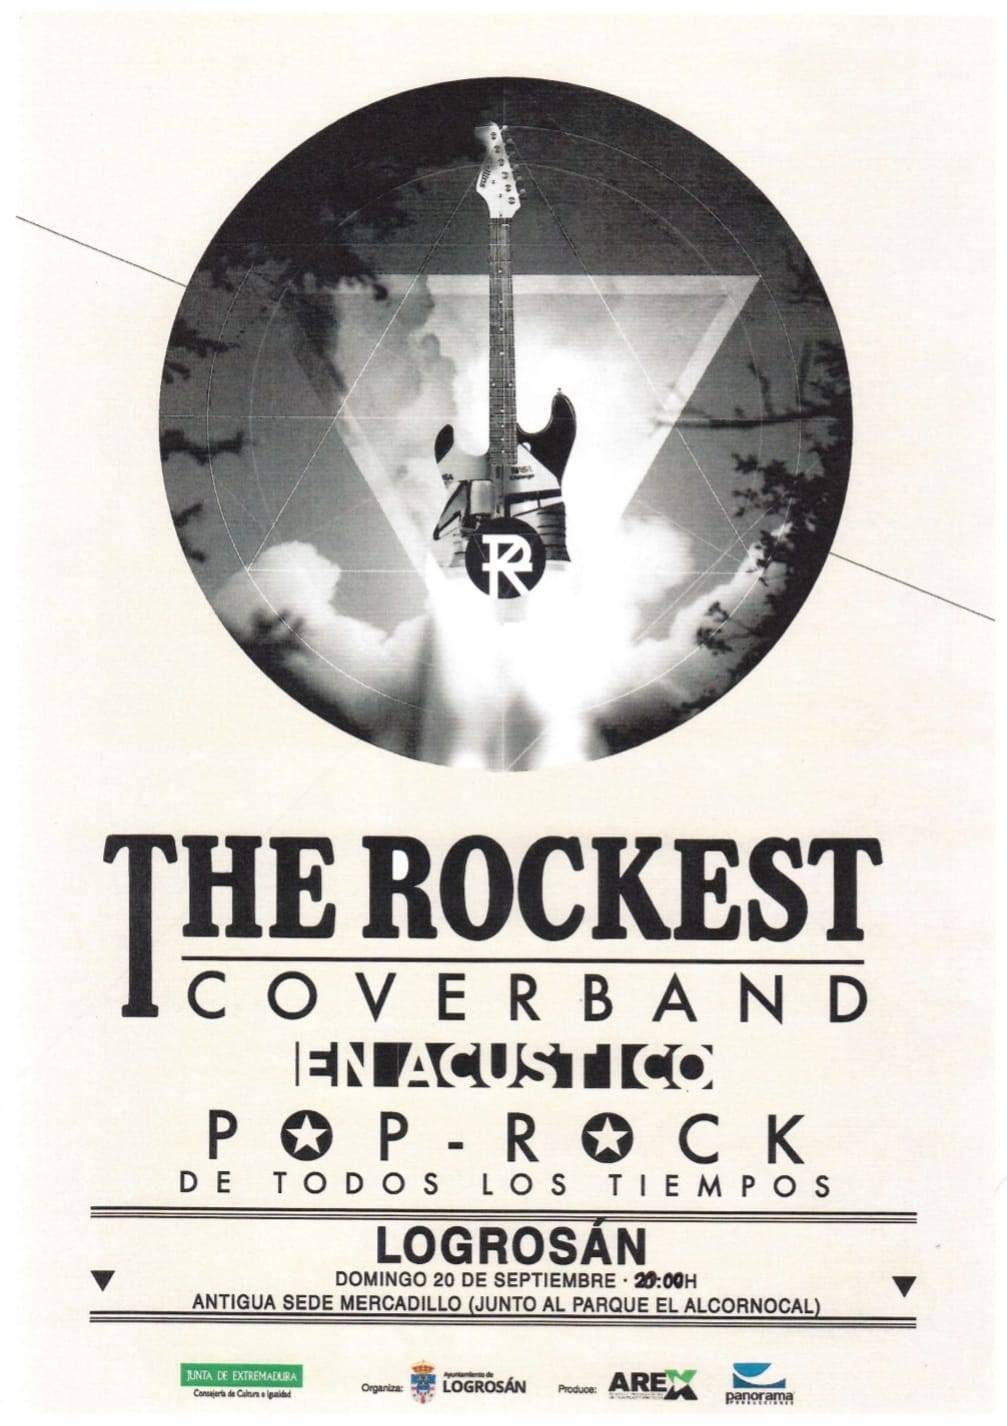 The Rockest Coverband (2020) - Logrosán (Cáceres)